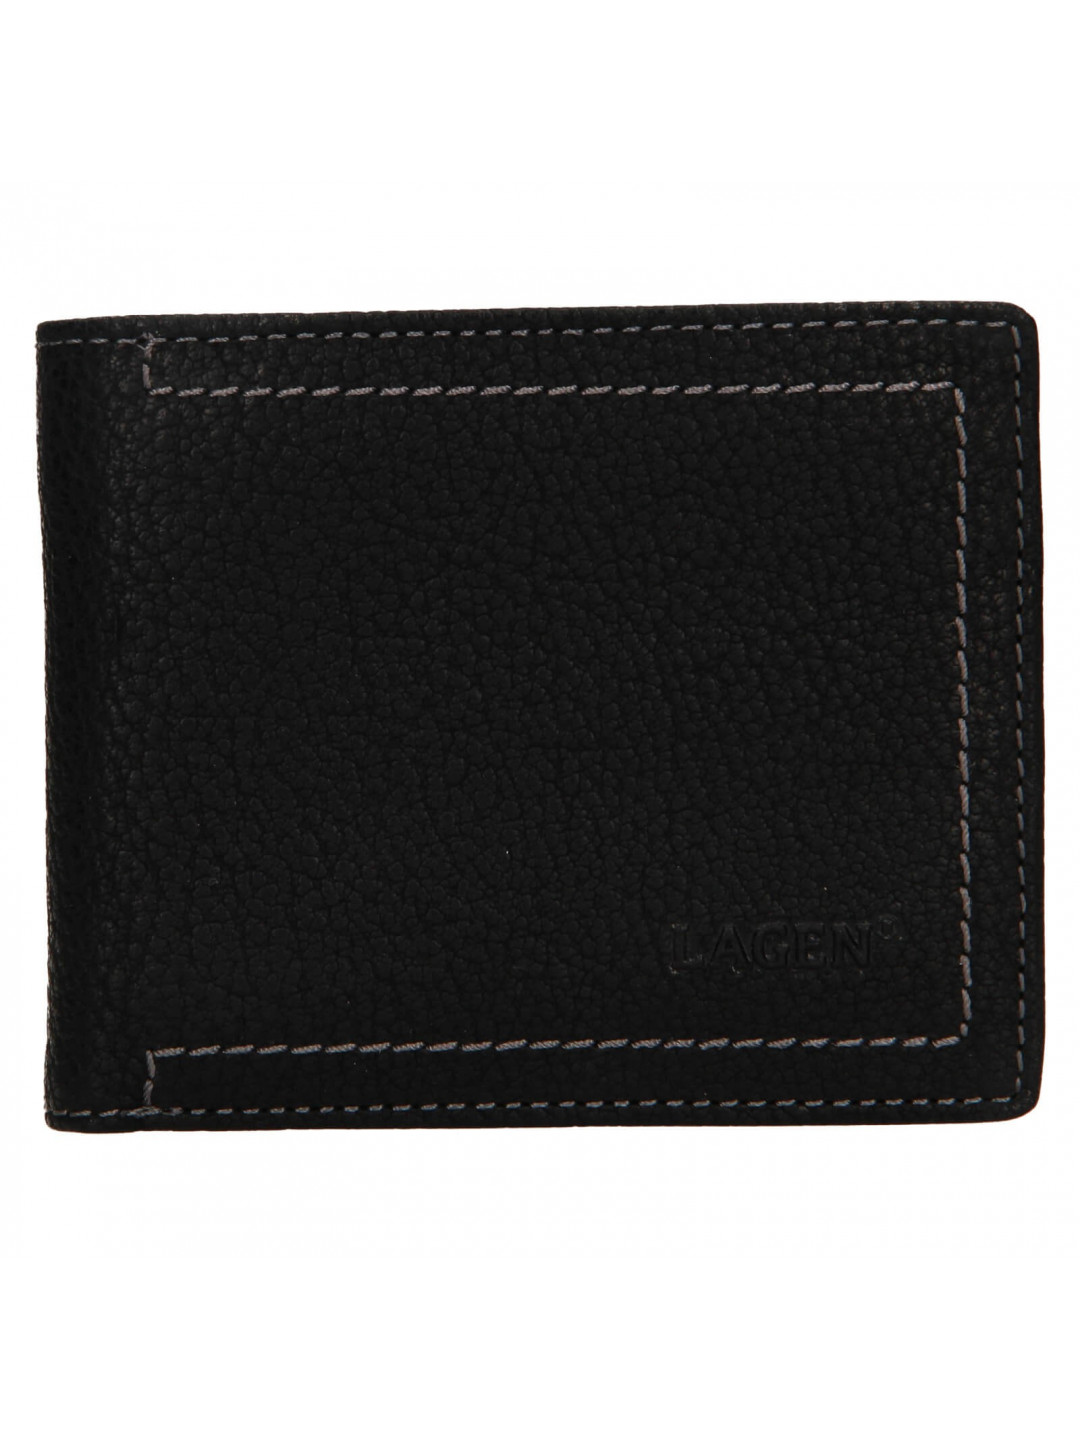 Pánská kožená peněženka Lagen Adrian – černá